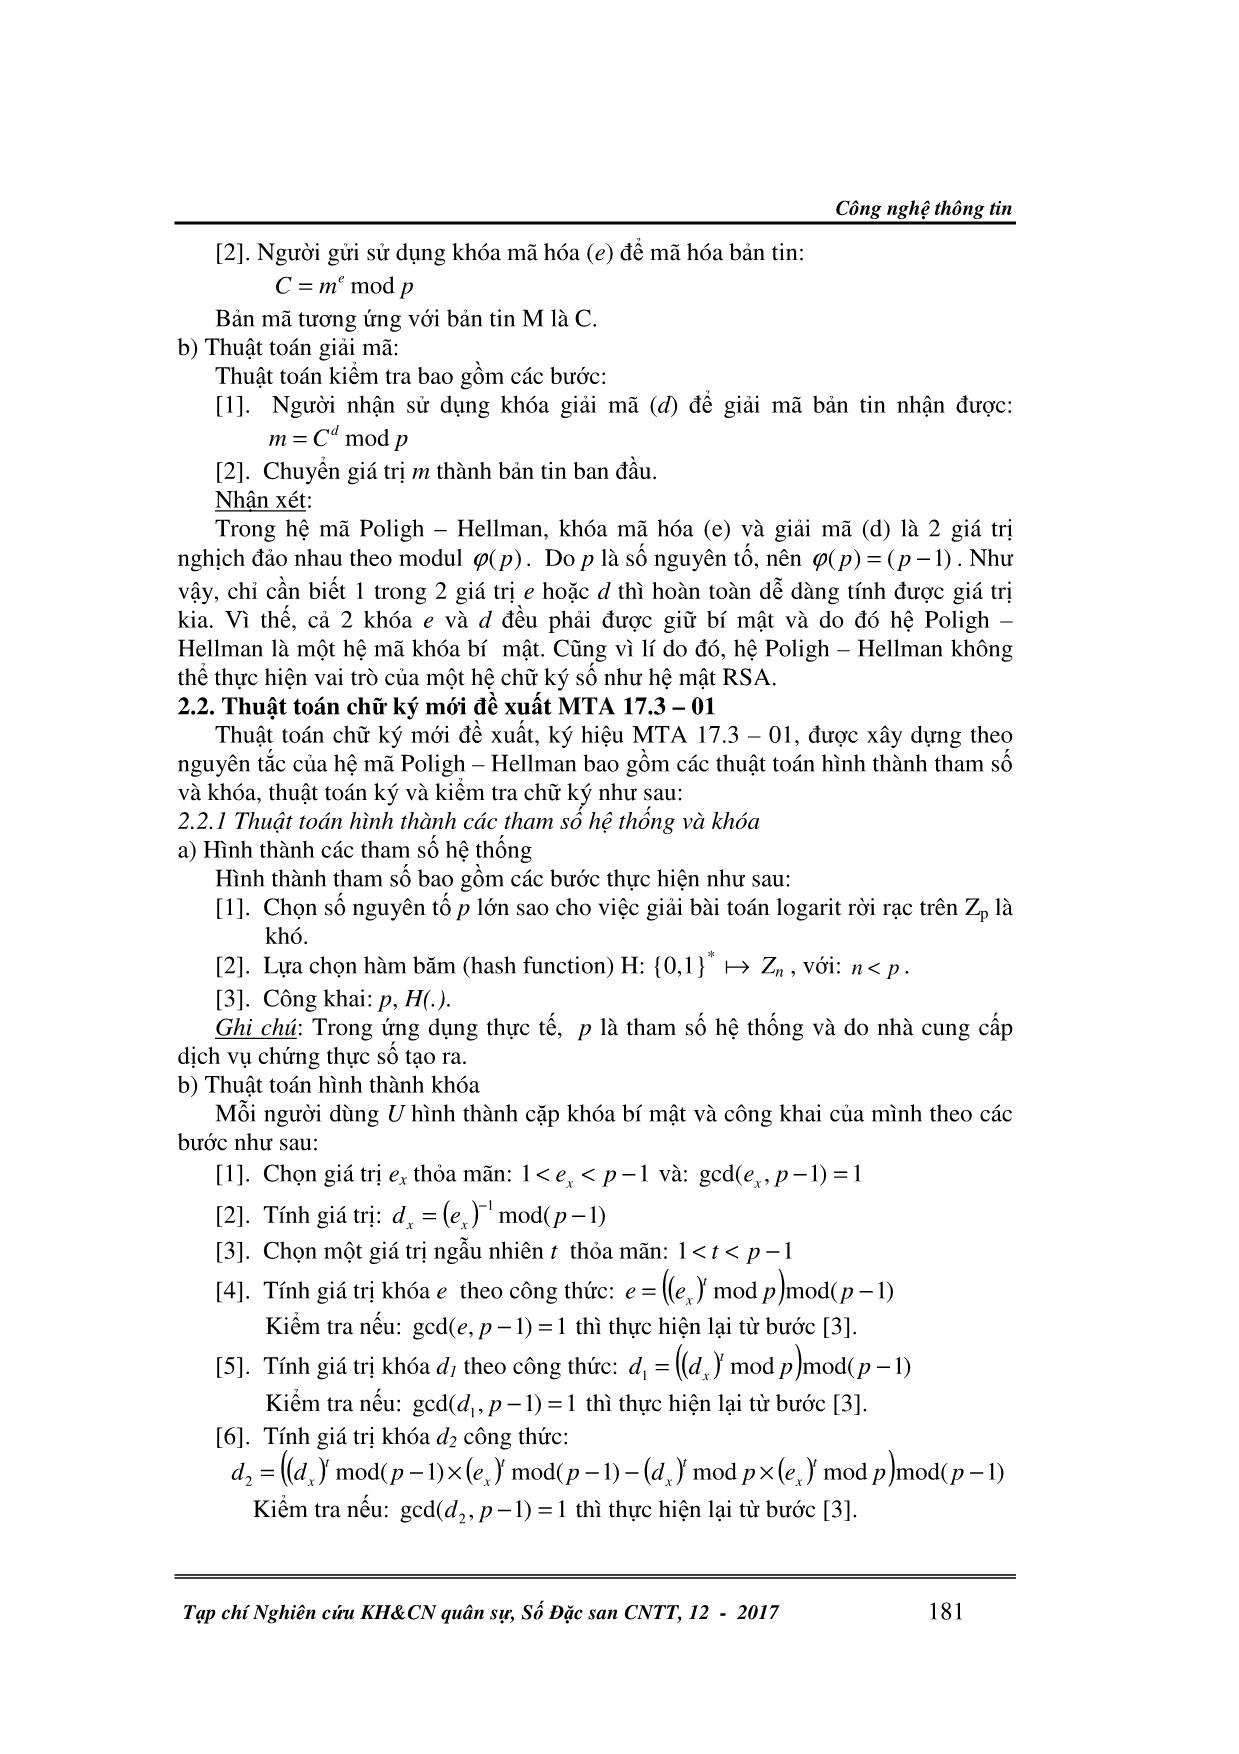 Phát triển thuật toán chữ ký số dựa trên hệ mã Poligh - Hellman trang 2